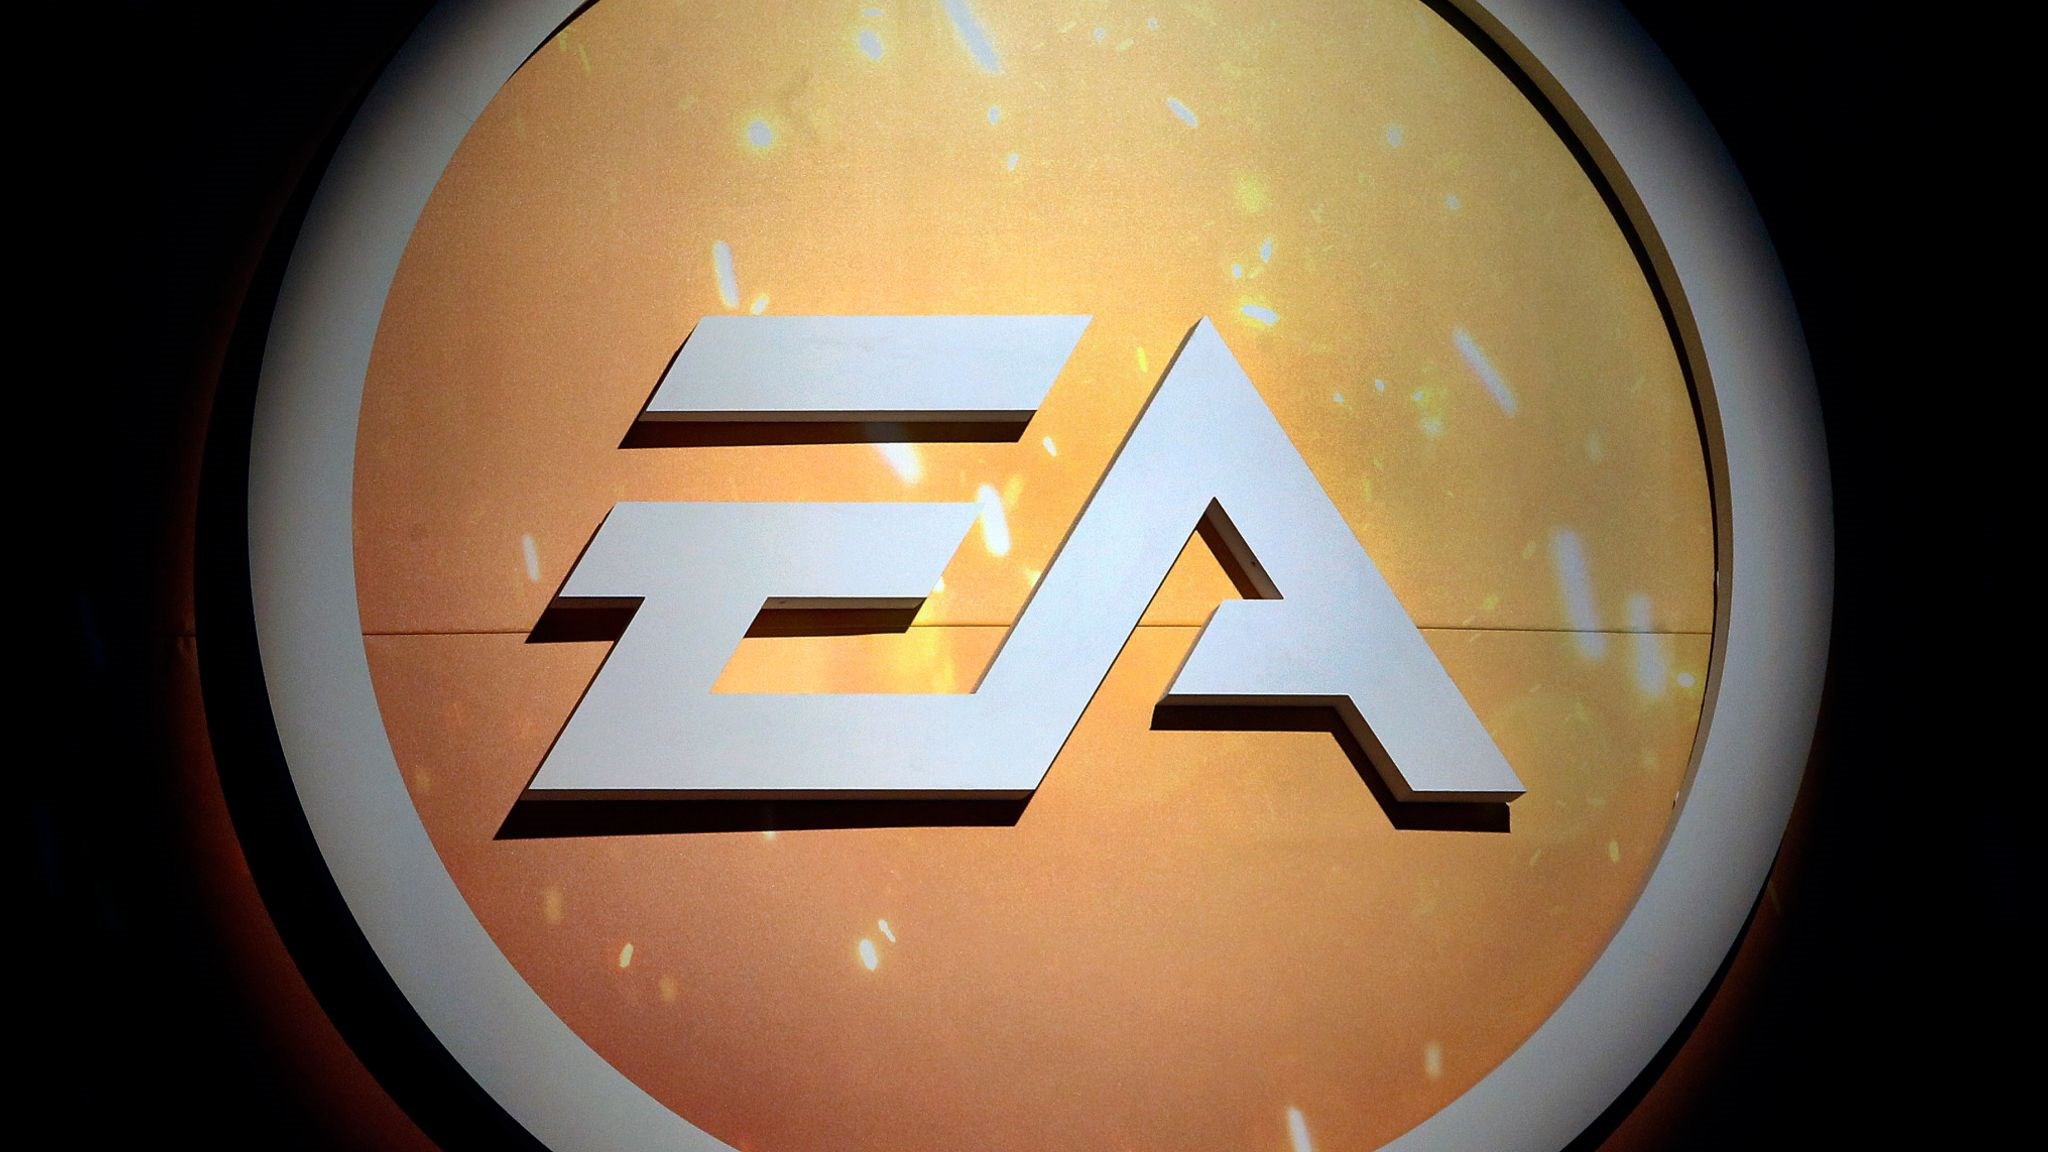 EA, Star Wars oyunlarından 3 milyar dolar kâr elde etti; Star Wars oyunları gelmeye devam edecek